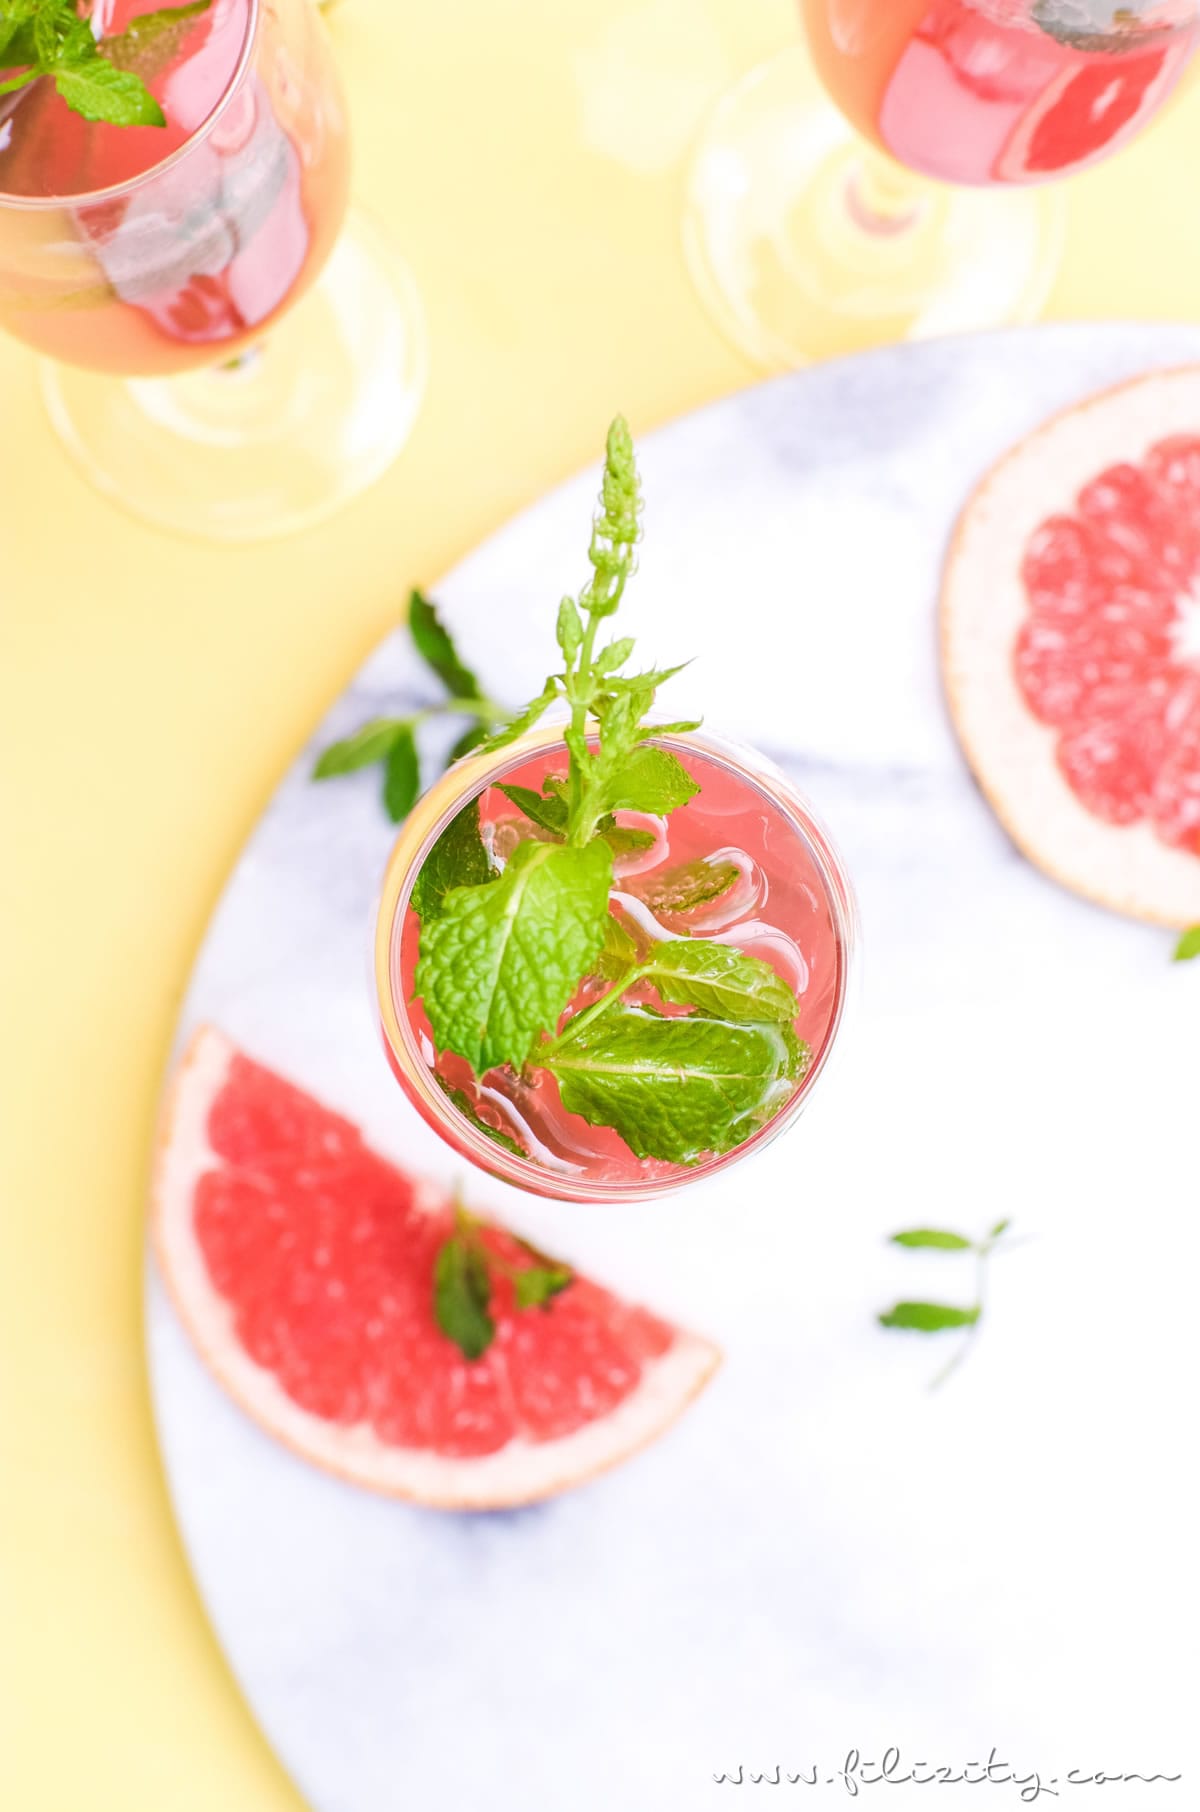 Rezept für einen Grapefruit-Cocktail mit oder ohne Alkohol | Erfrischender Sommer-Drink aus dem Slow Juicer | Filizity.com | Food-Blog aus dem Rheinland #cocktail #mocktail #sommer